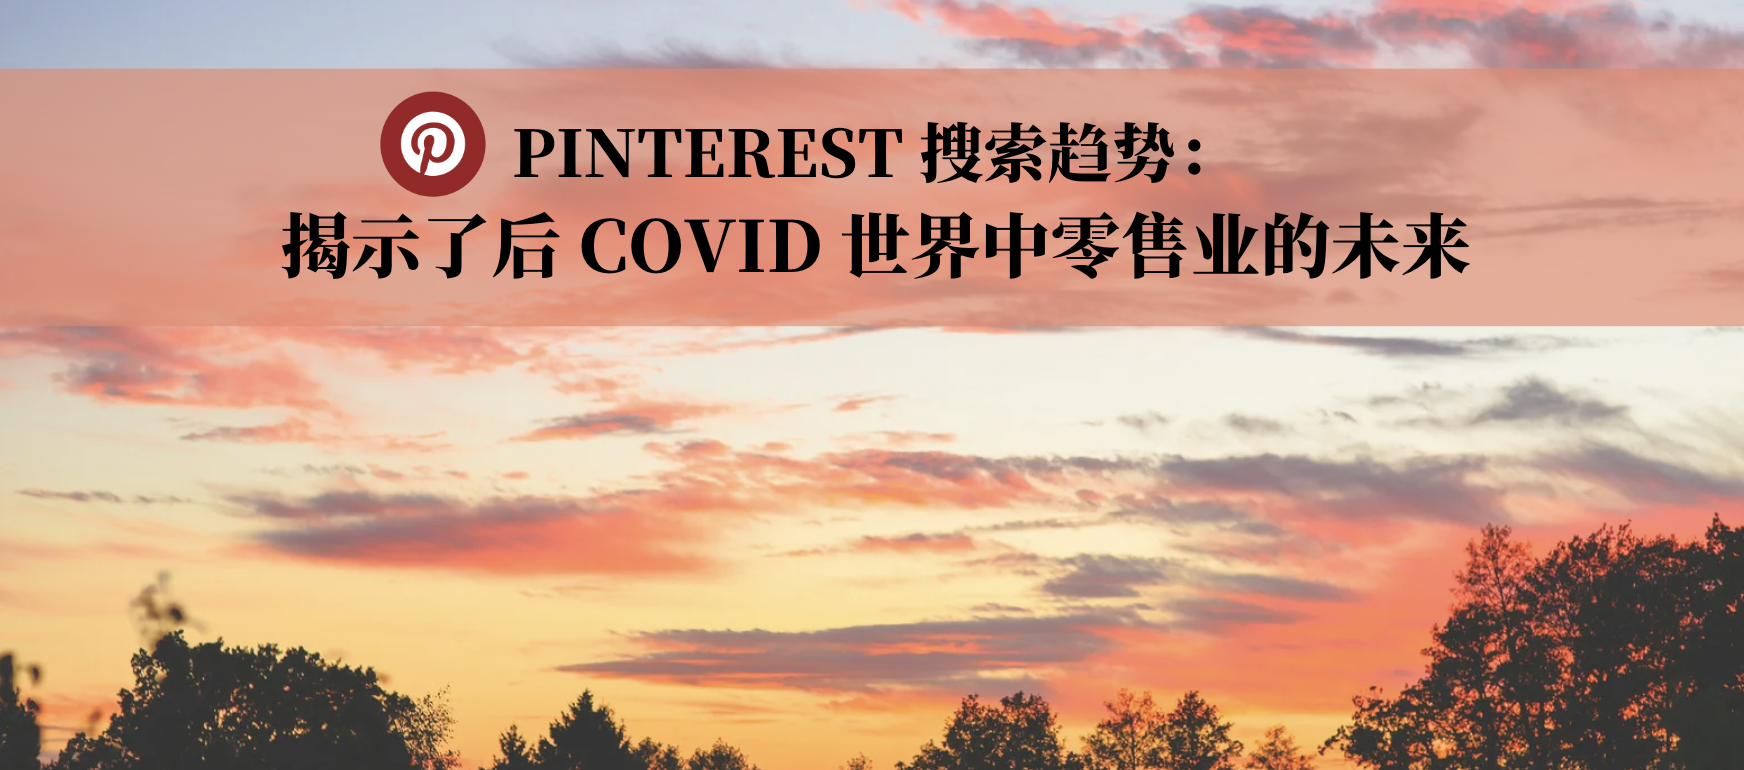 Pinterest 搜索趋势揭示了后 COVID 世界中零售业的未来